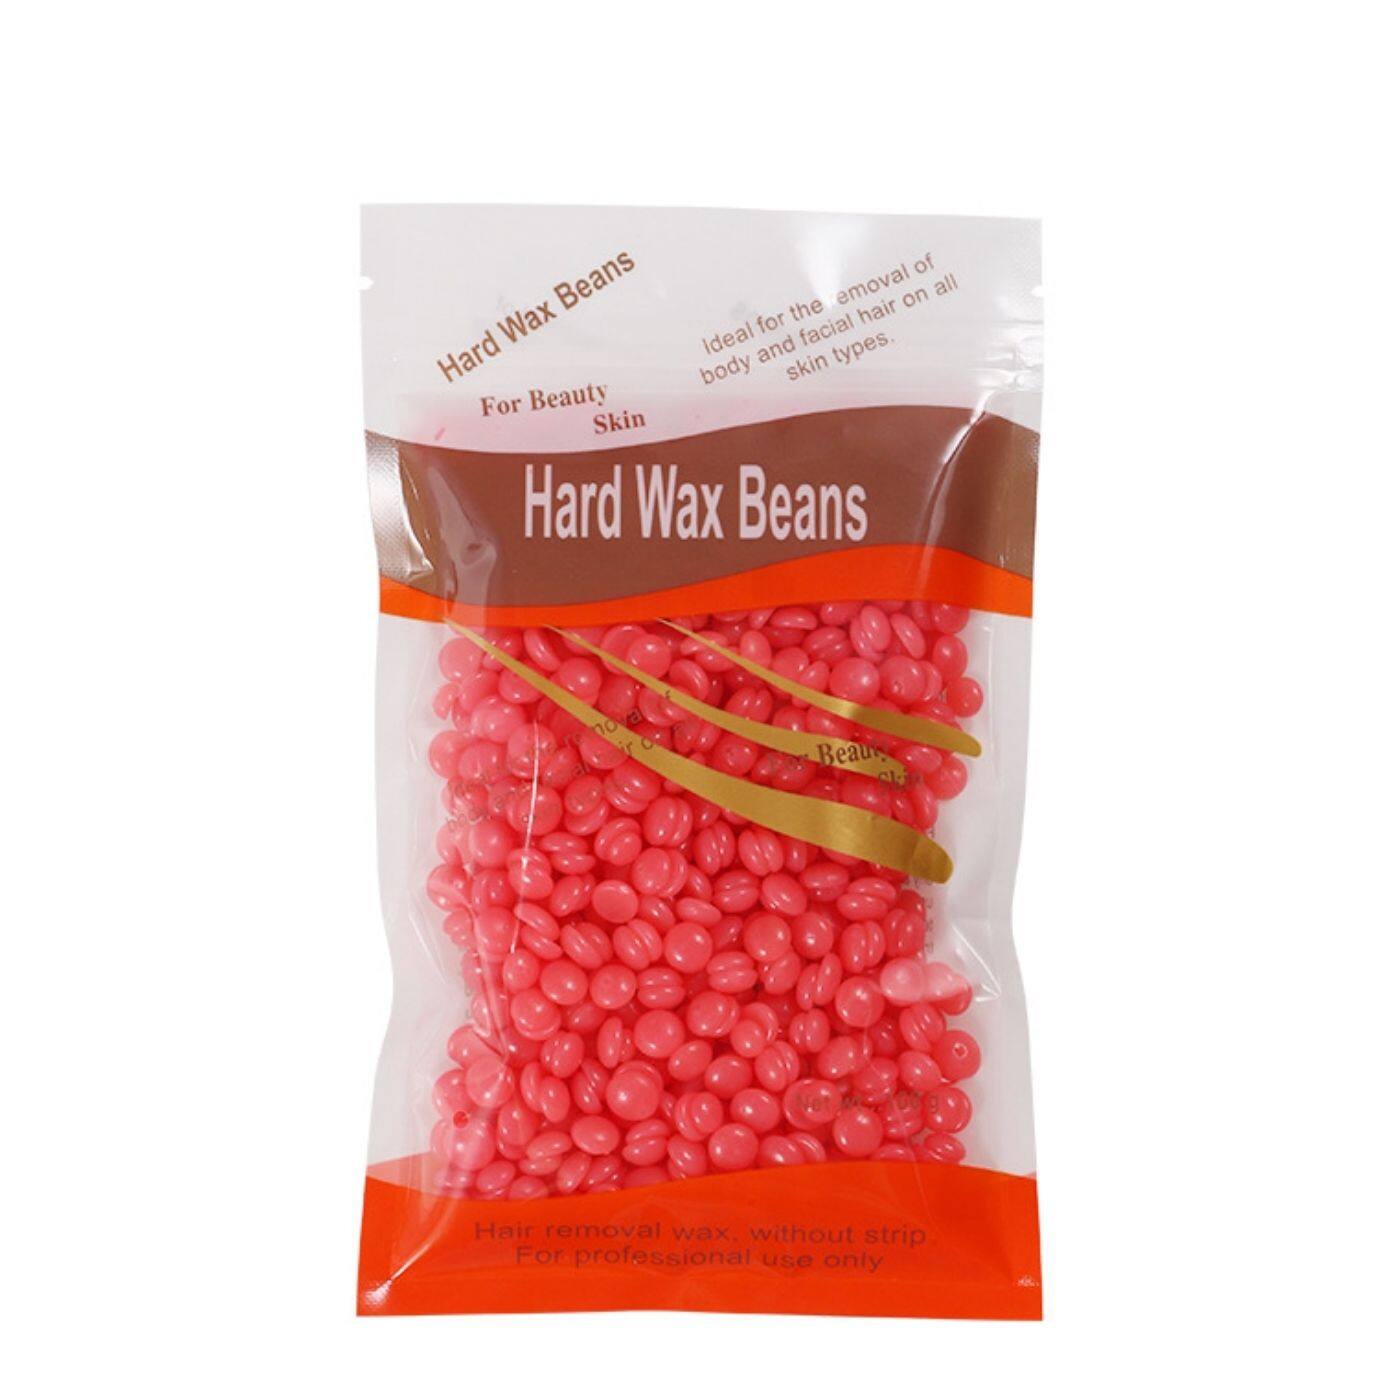 เม็ดแว๊กซ์กำจัดขน Hard wax beans ขนาด 100 g.